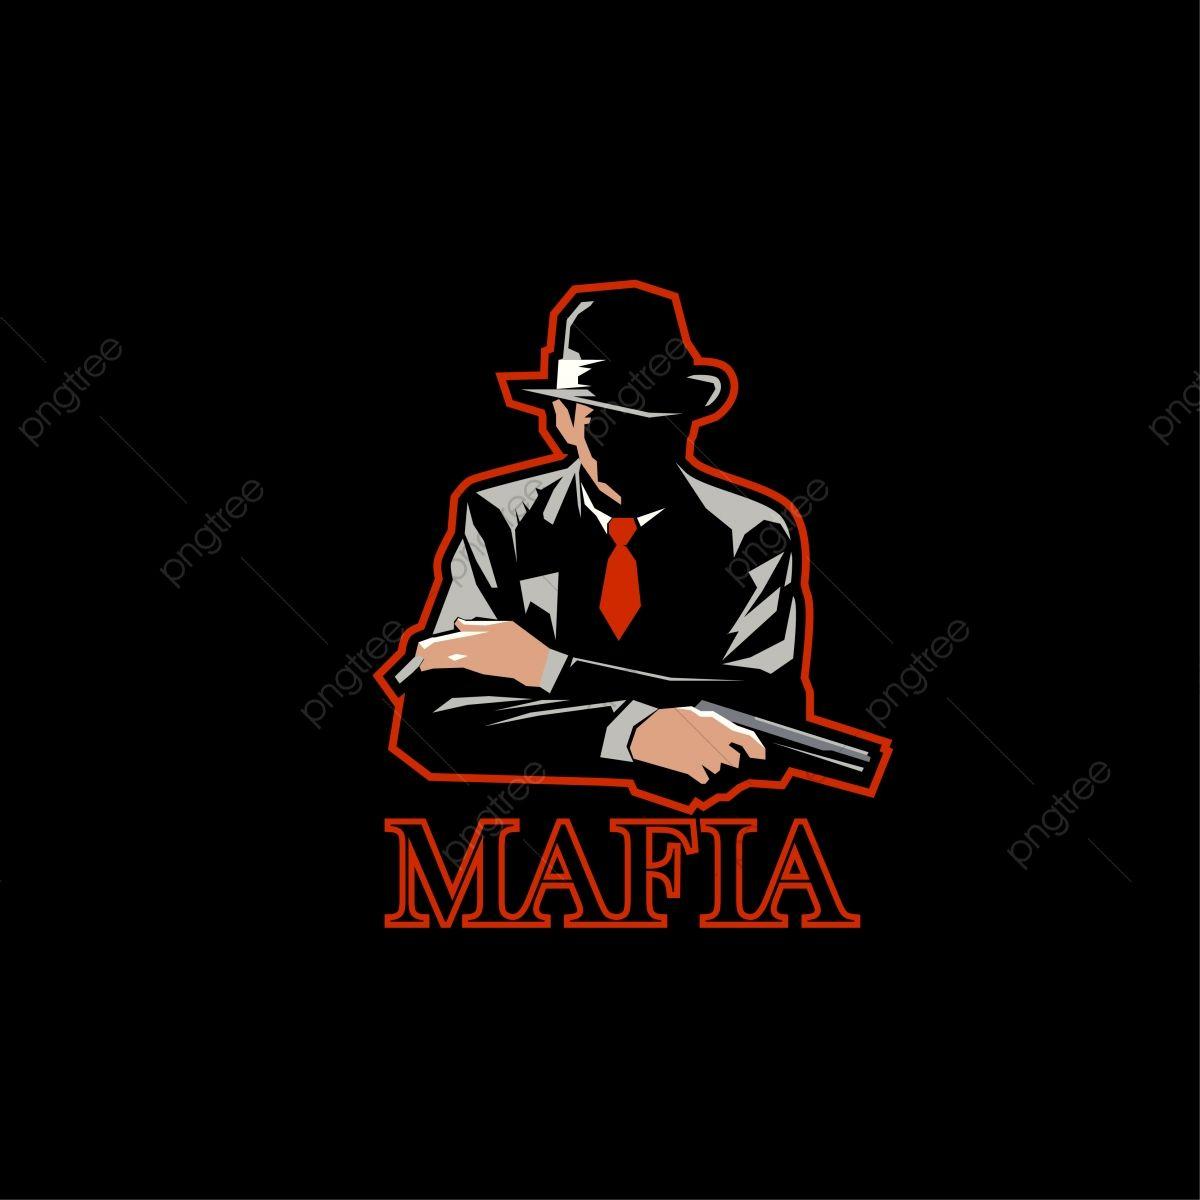 Mafia Logo - Mafia Logo Mascot E Sport. Man With Fedora Hat And Pistol, Mafia